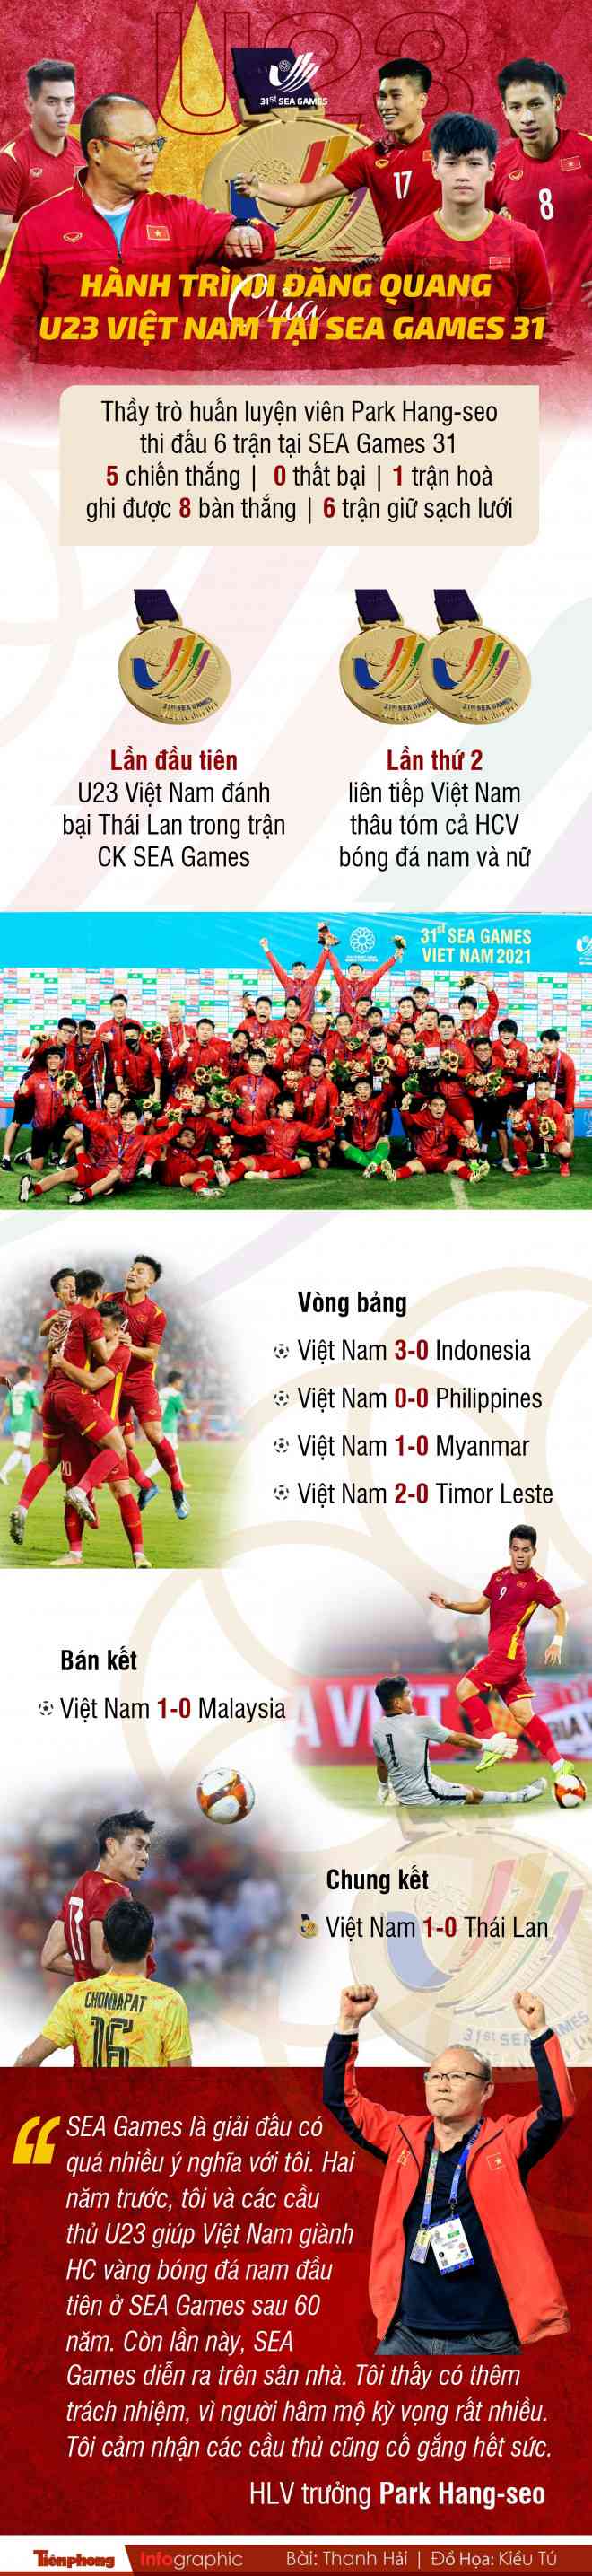 Hành trình đăng quang của U23 Việt Nam tại SEA Games 31 - 1